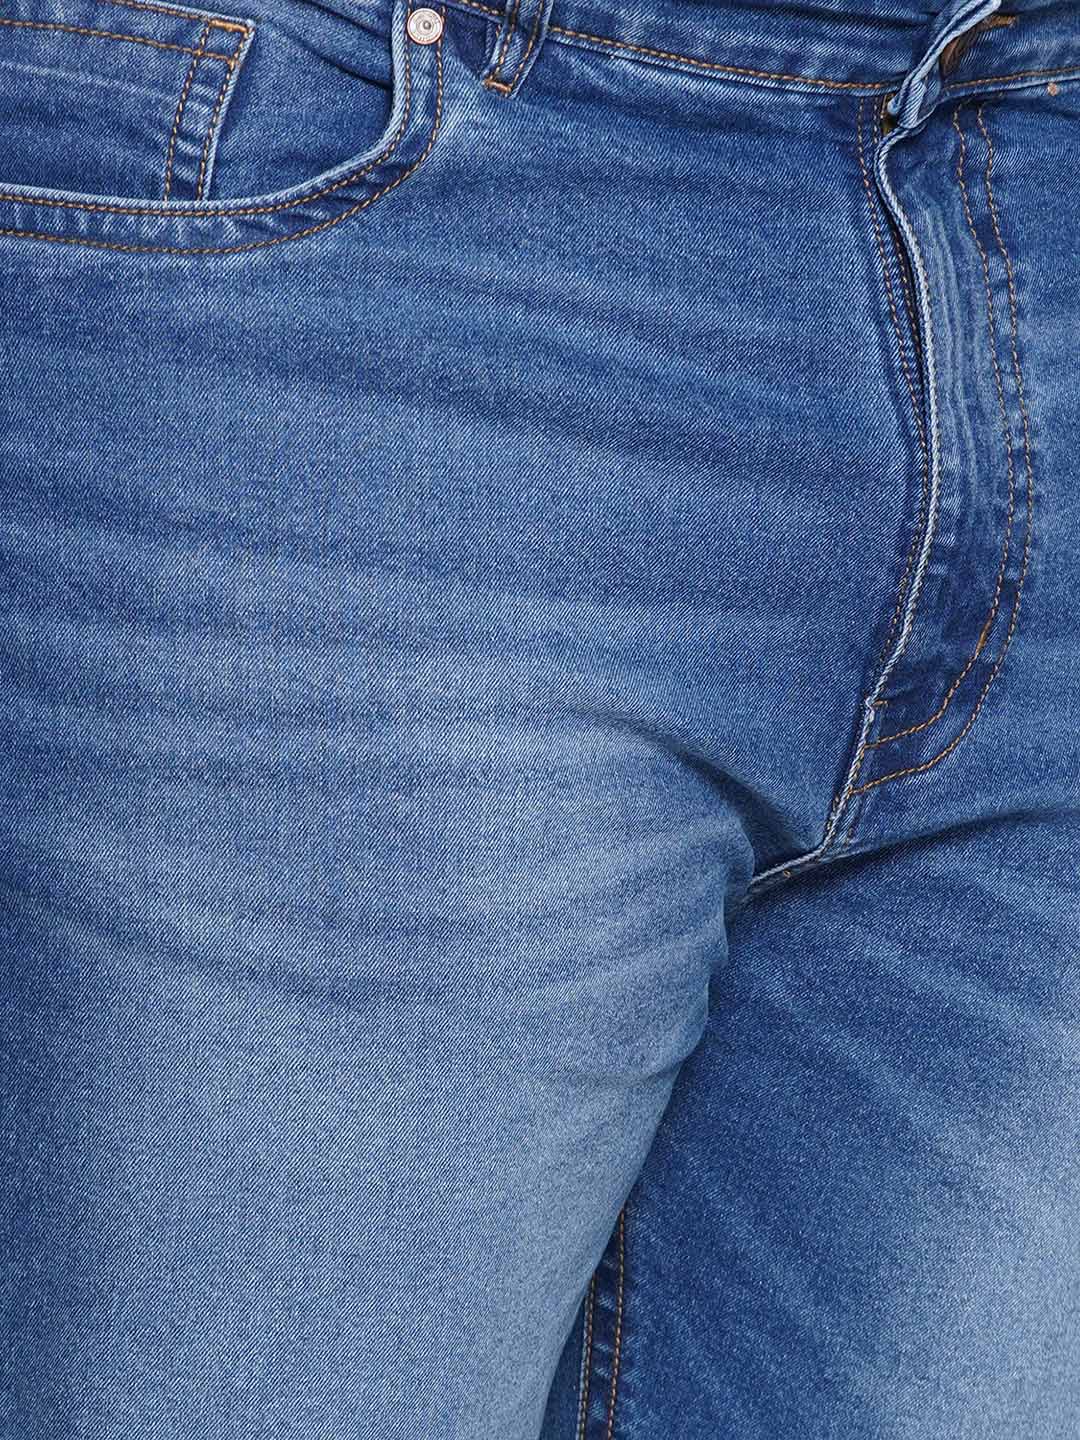 bottomwear/jeans/EJPJ25149/ejpj25149-2.jpg